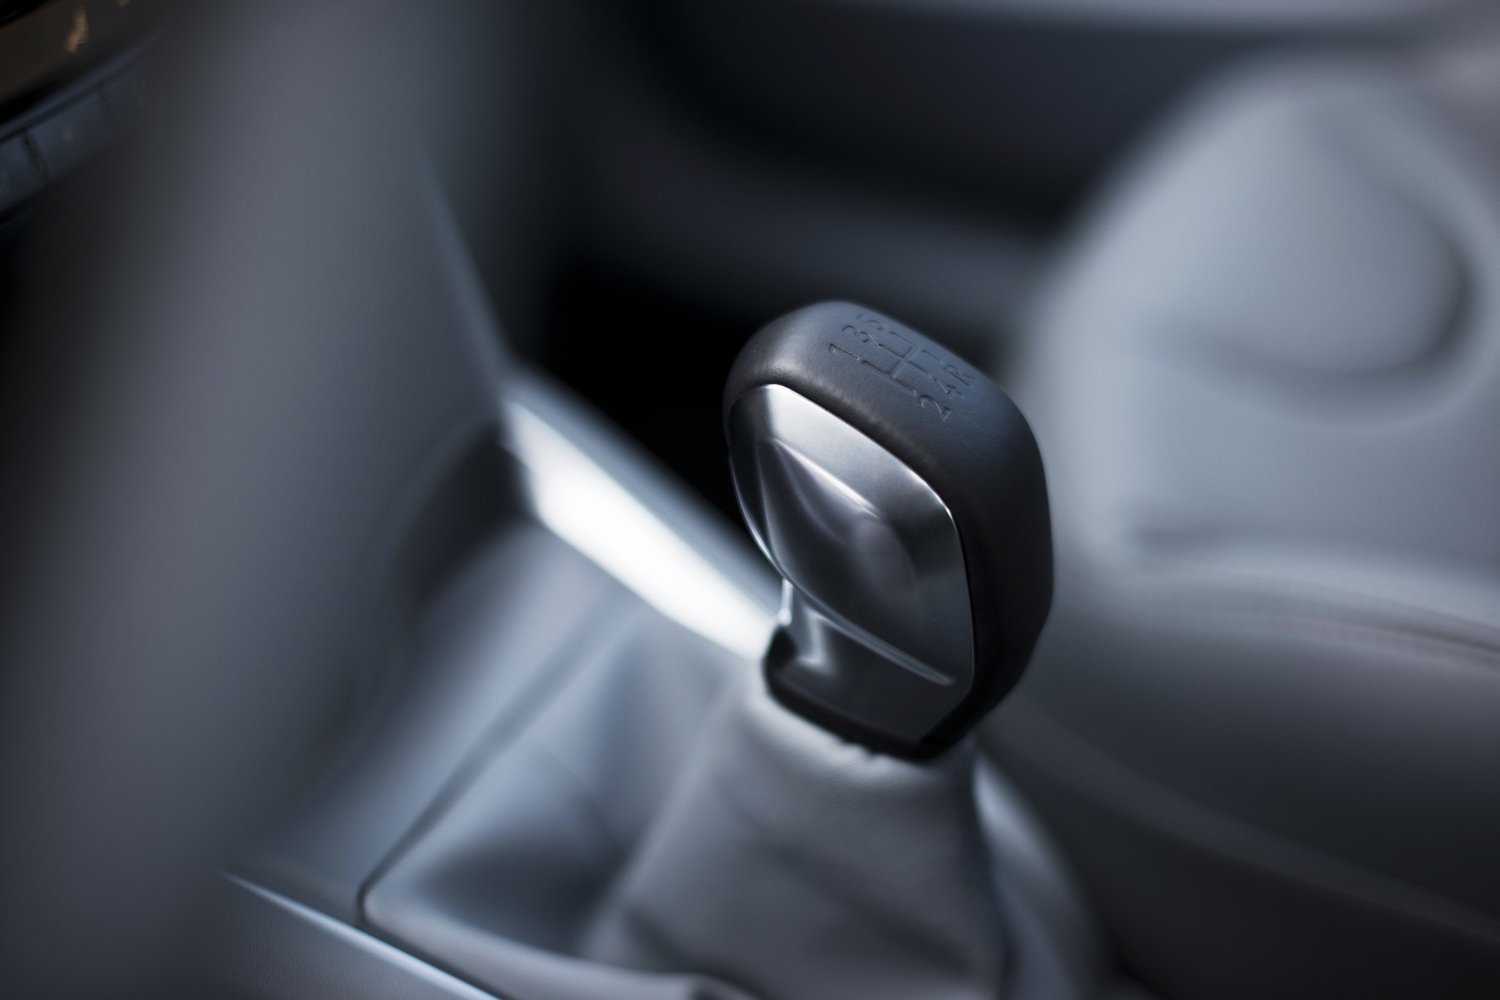 хэтчбек 5 дв. Peugeot 208 2013 - 2015г выпуска модификация 1.2 AMT (82 л.с.)